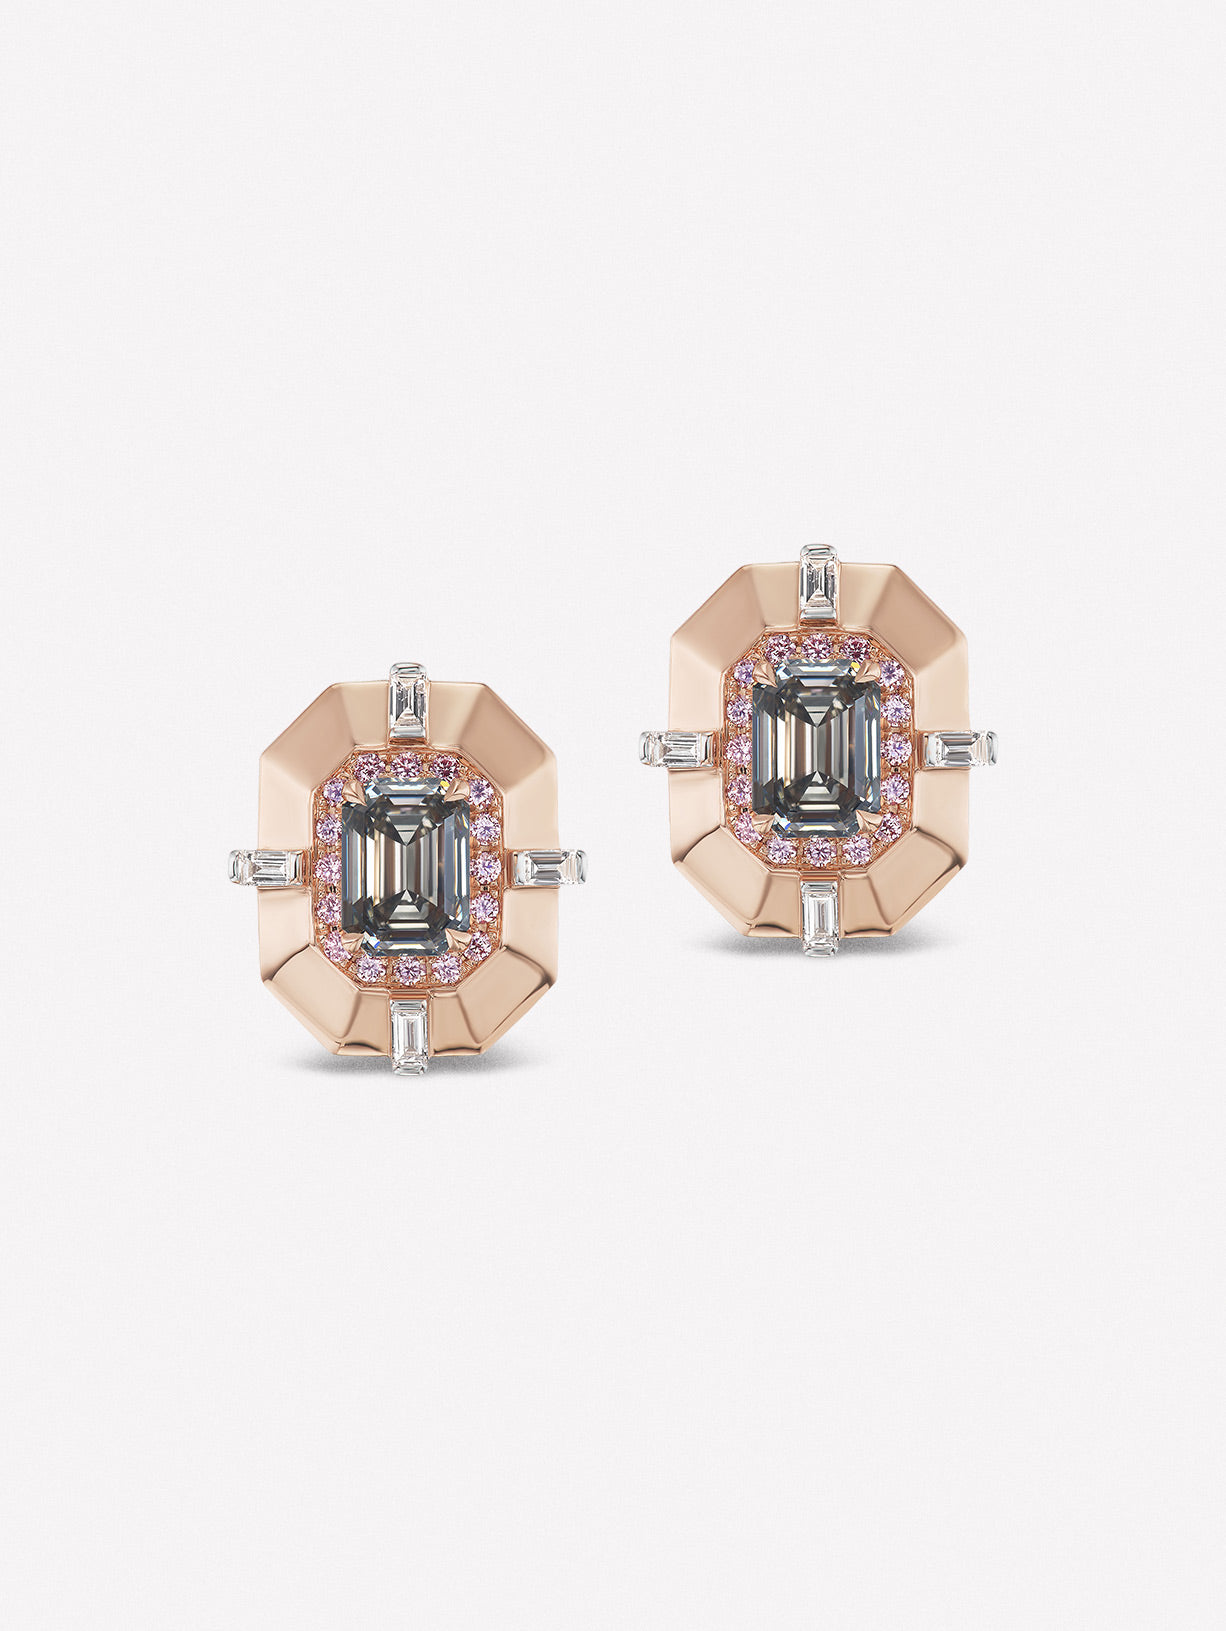 Argyle Pink™ Diamond and Gray Diamonds Studs - Pink Diamonds, J FINE - J Fine, earrings - Pink Diamond Jewelry, argyle-pink™-diamond-and-gray-diamonds-studs-by-j-fine - Argyle Pink Diamon